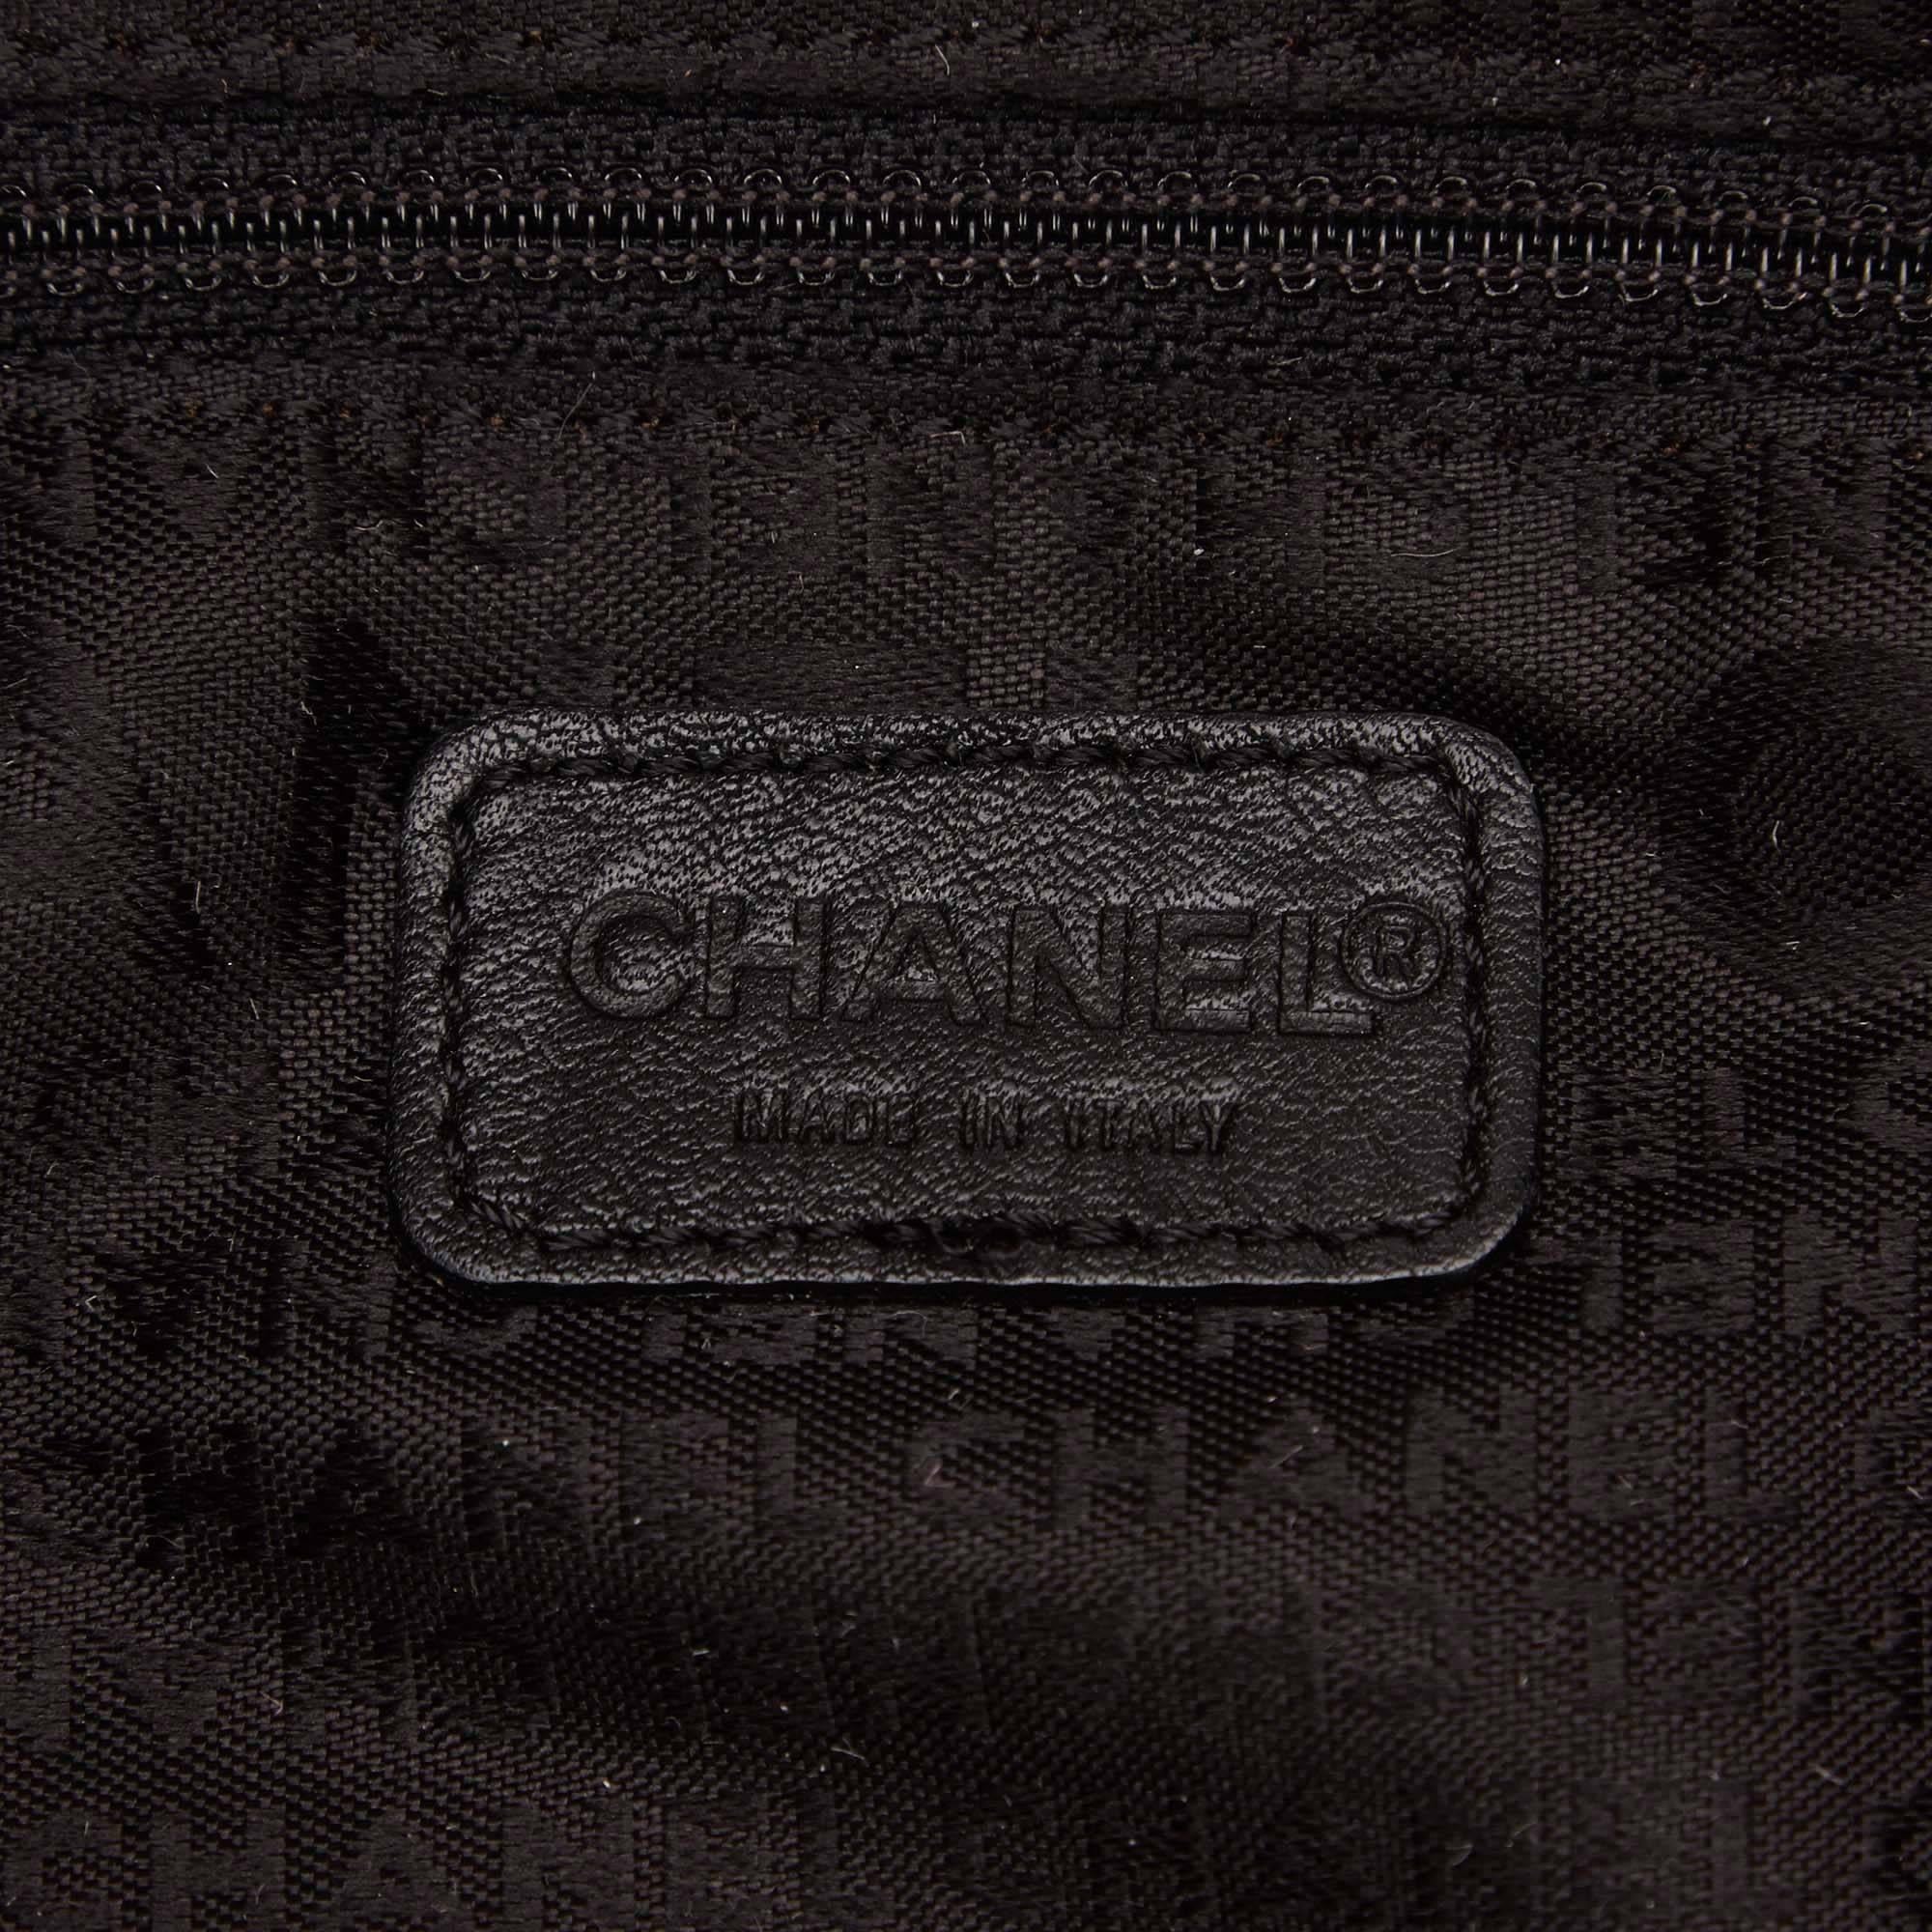 Chanel Black Lambskin Leather 